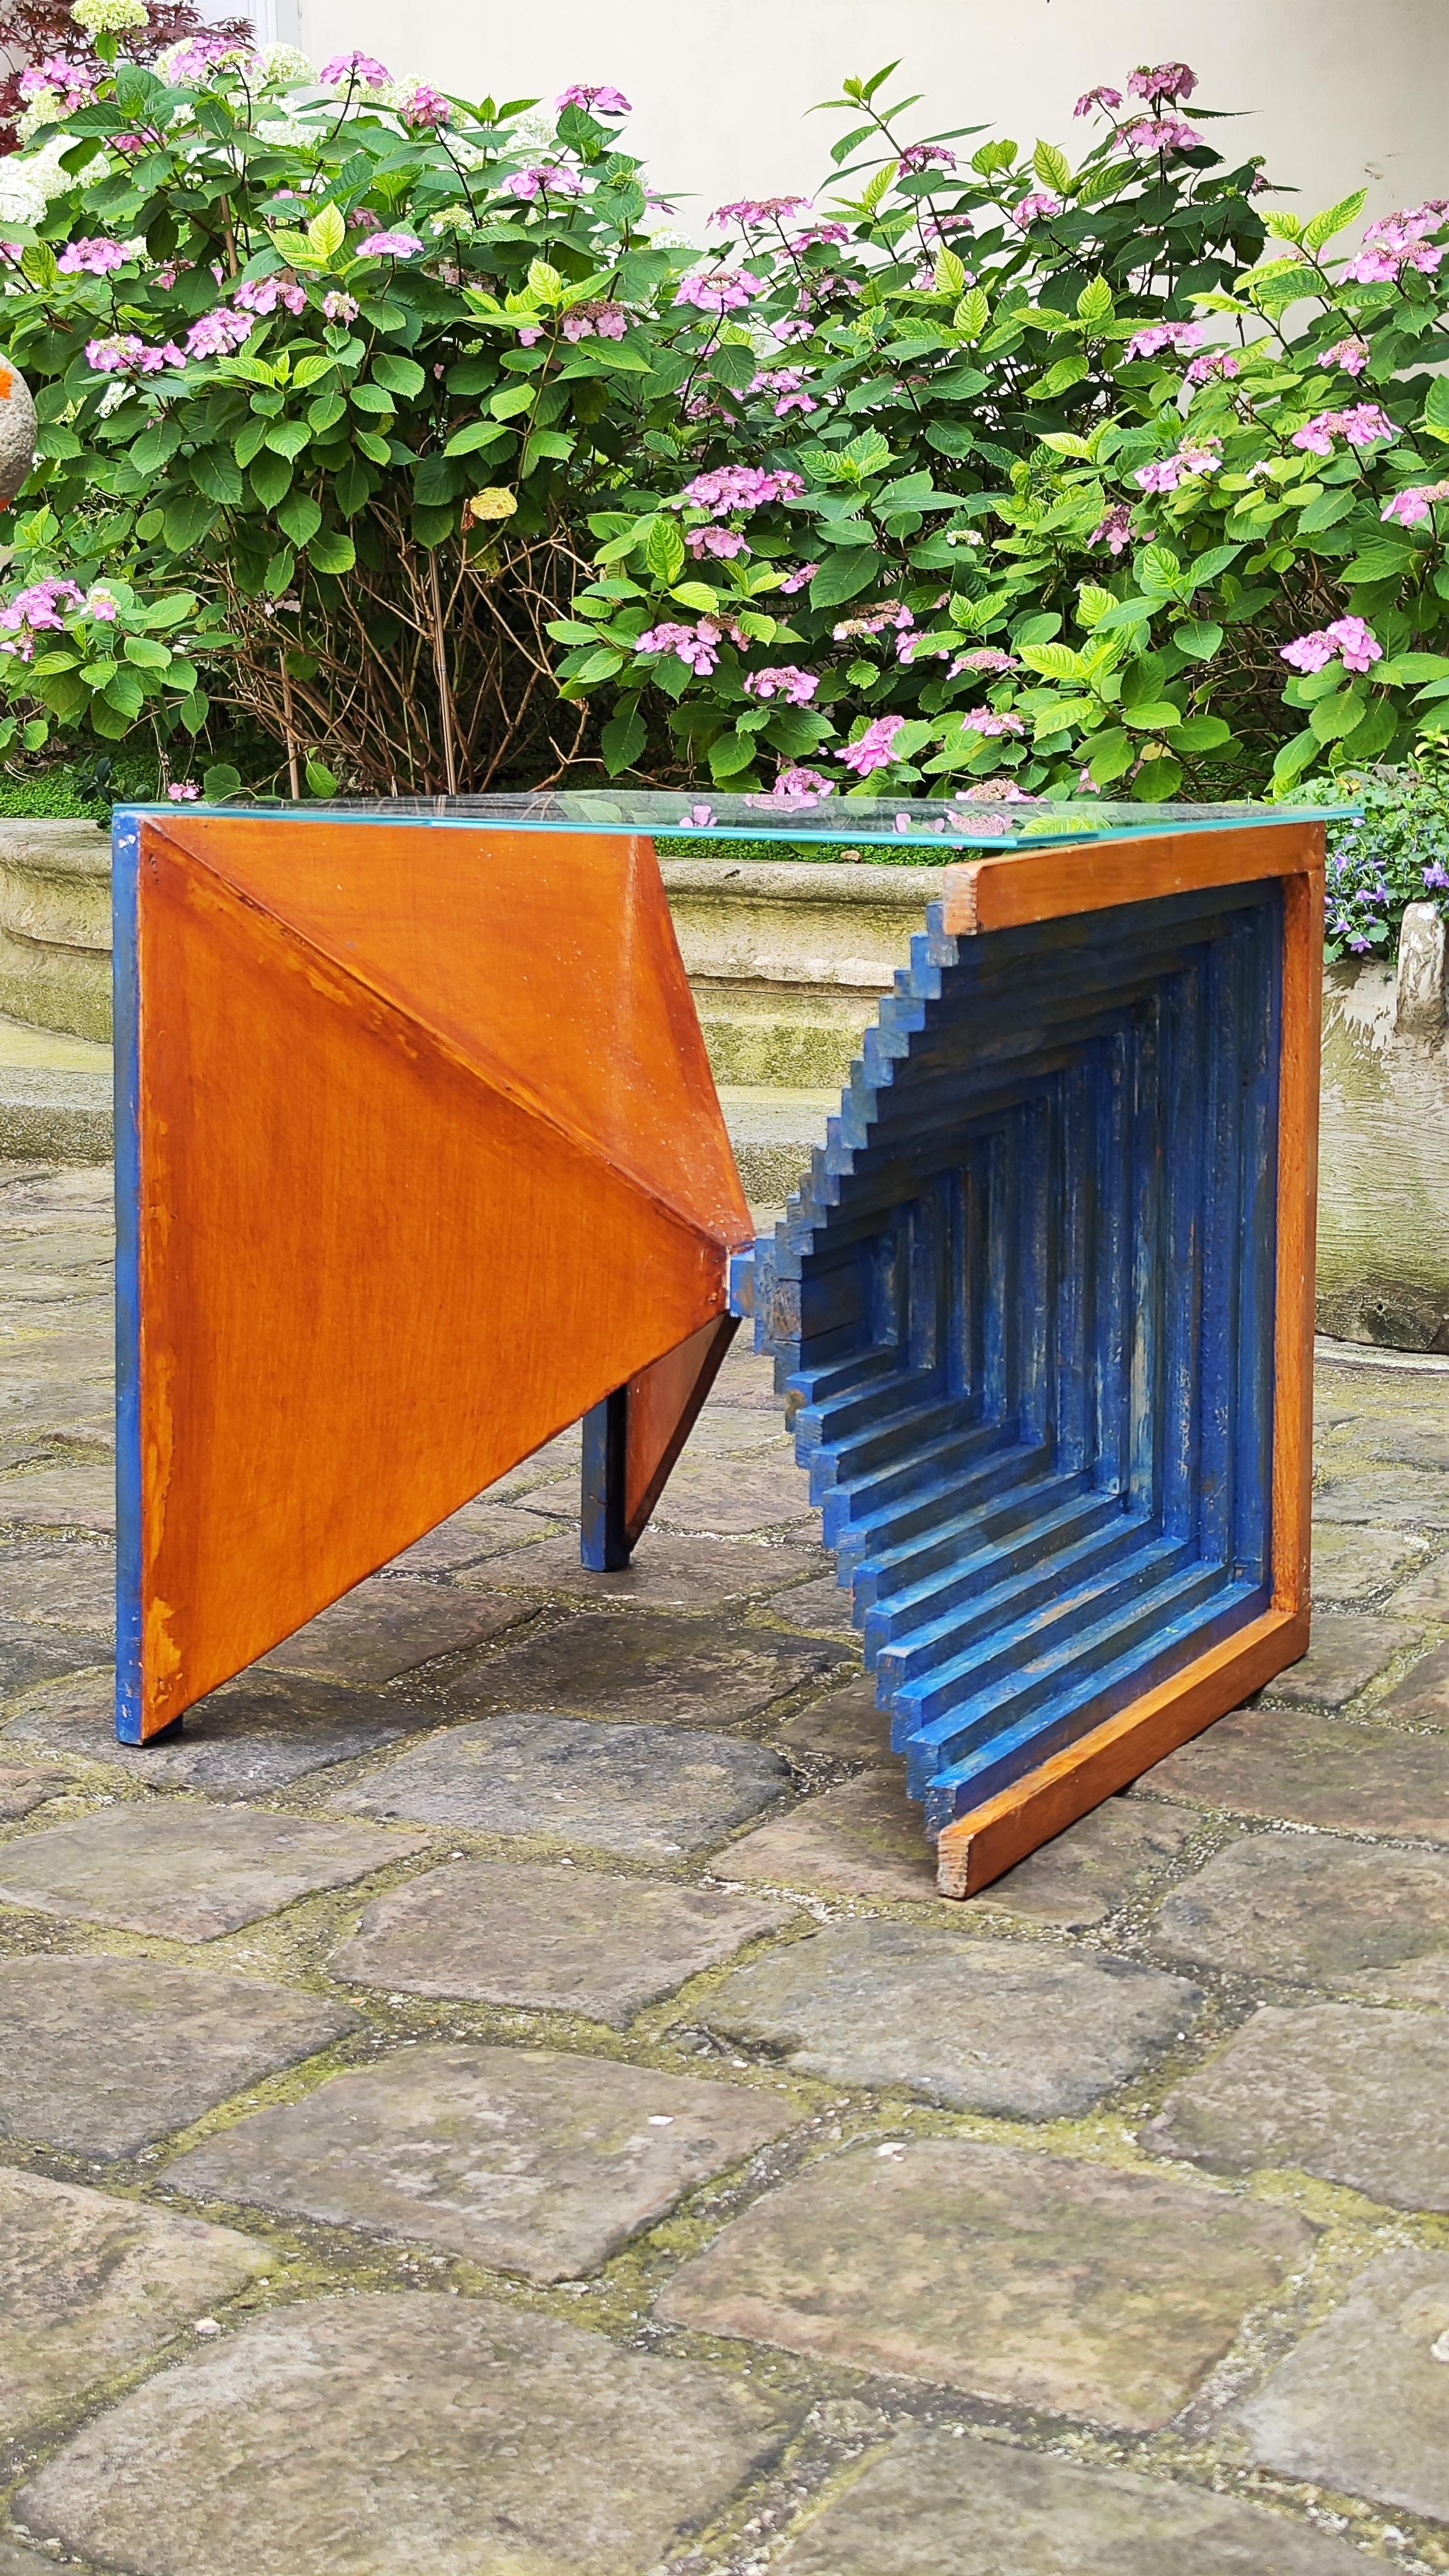 Cette table basse est une pièce de design unique.
.
Table basse en bois sculpté des années 50 - brutaliste et minimaliste.
.
France - 1950.
.
En se concentrant sur la tridimensionnalité des élévations de certaines architectures, le designer a voulu